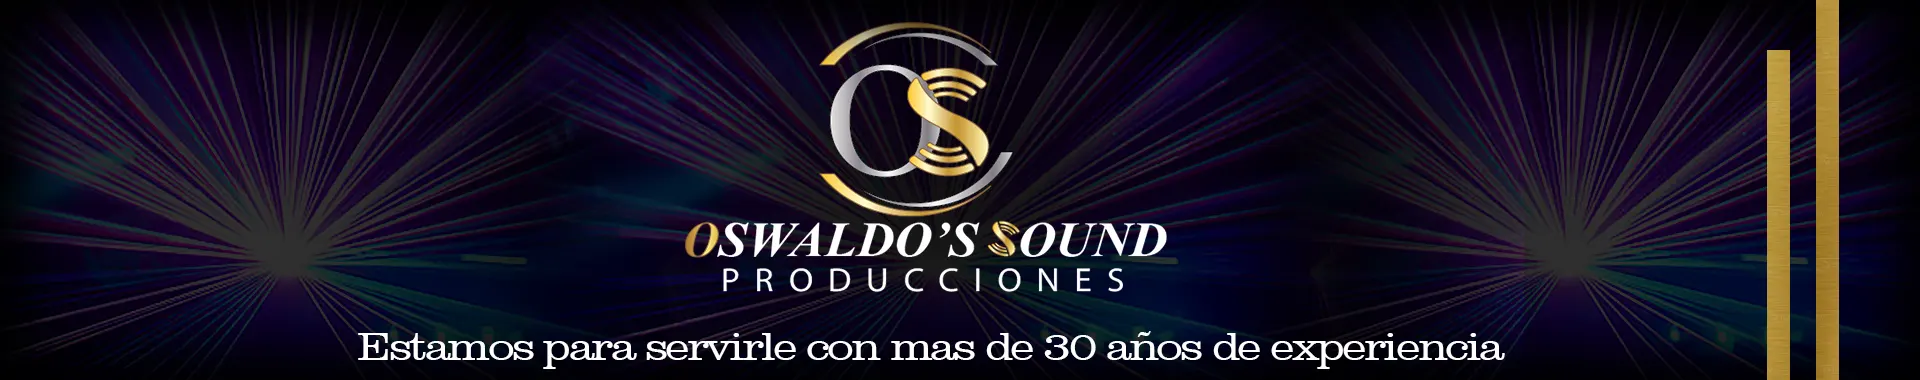 Imagen 1 del perfil de Oswaldo's Sound